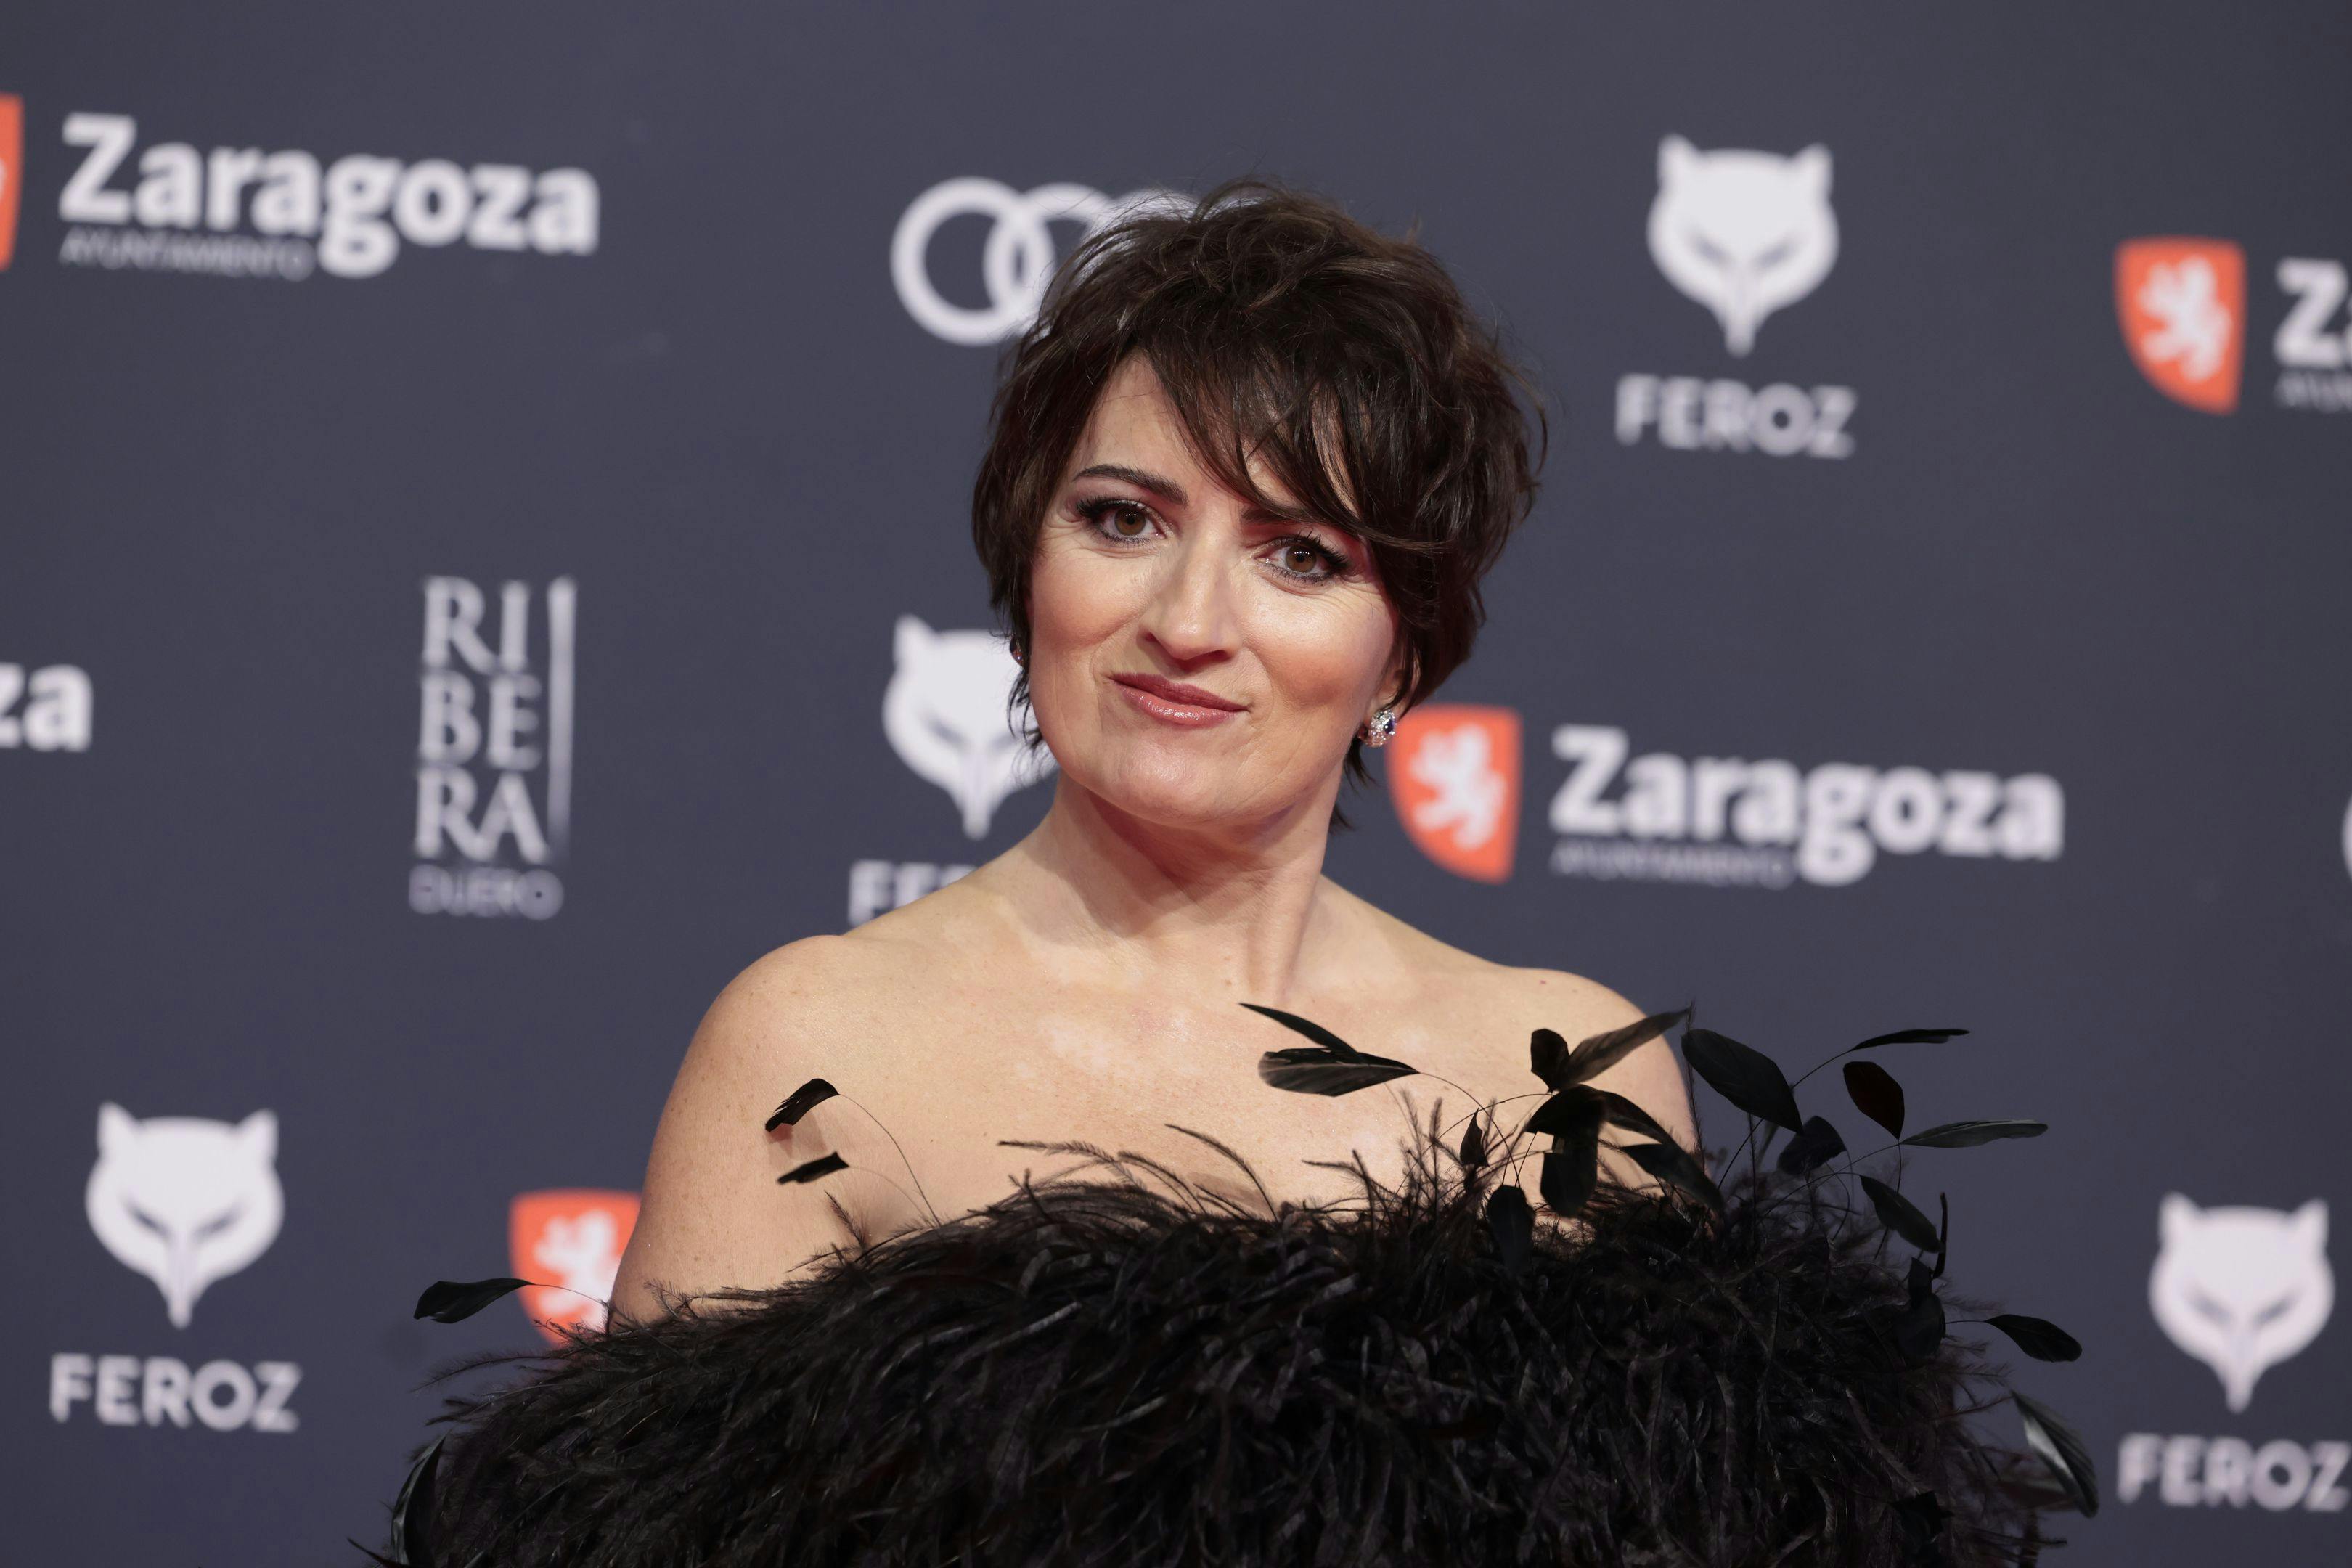 Silvia Abril, la que fuera presentadora de los Feroz, derrochó simpatía en la alfombra roja